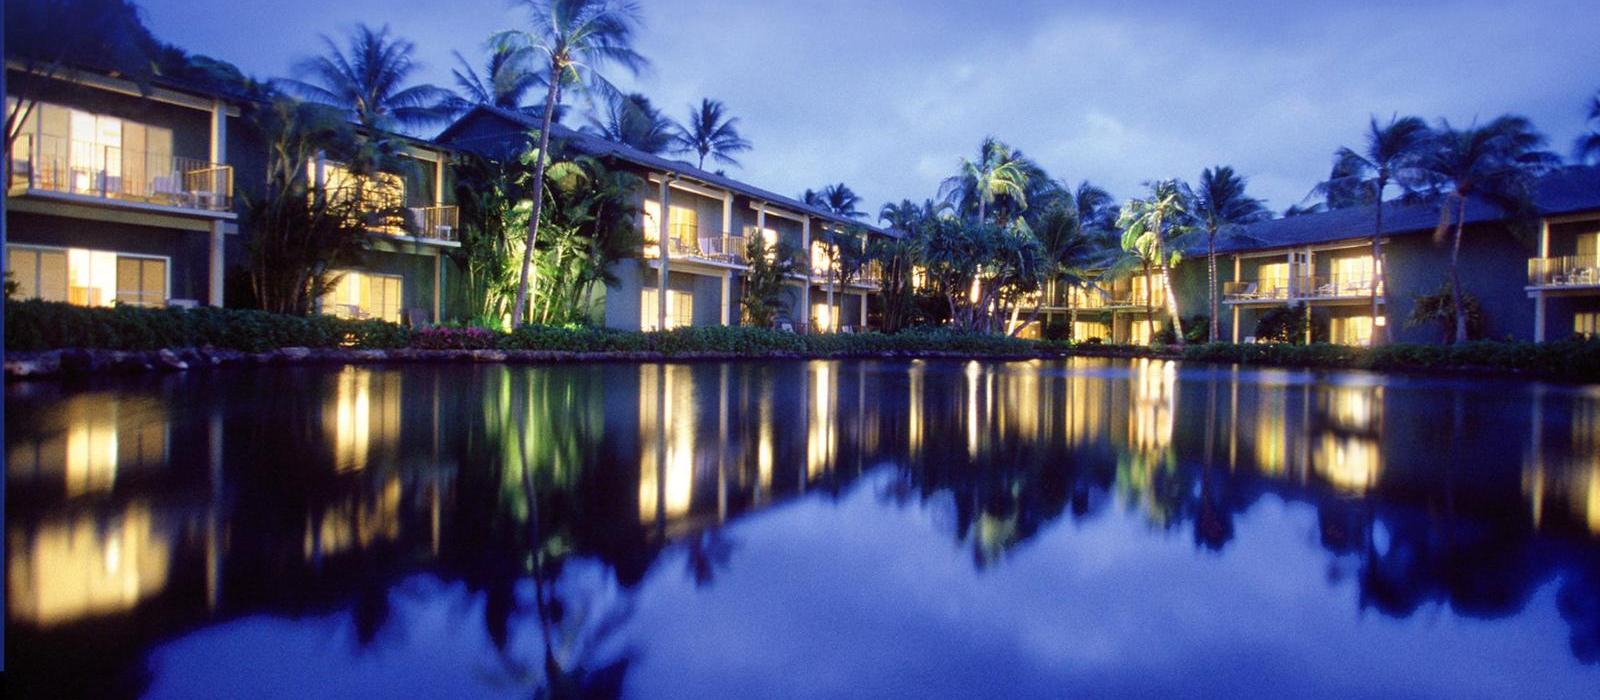 凯海兰度假村酒店(The Kahala Hotel & Resort) 图片  www.lhw.cn